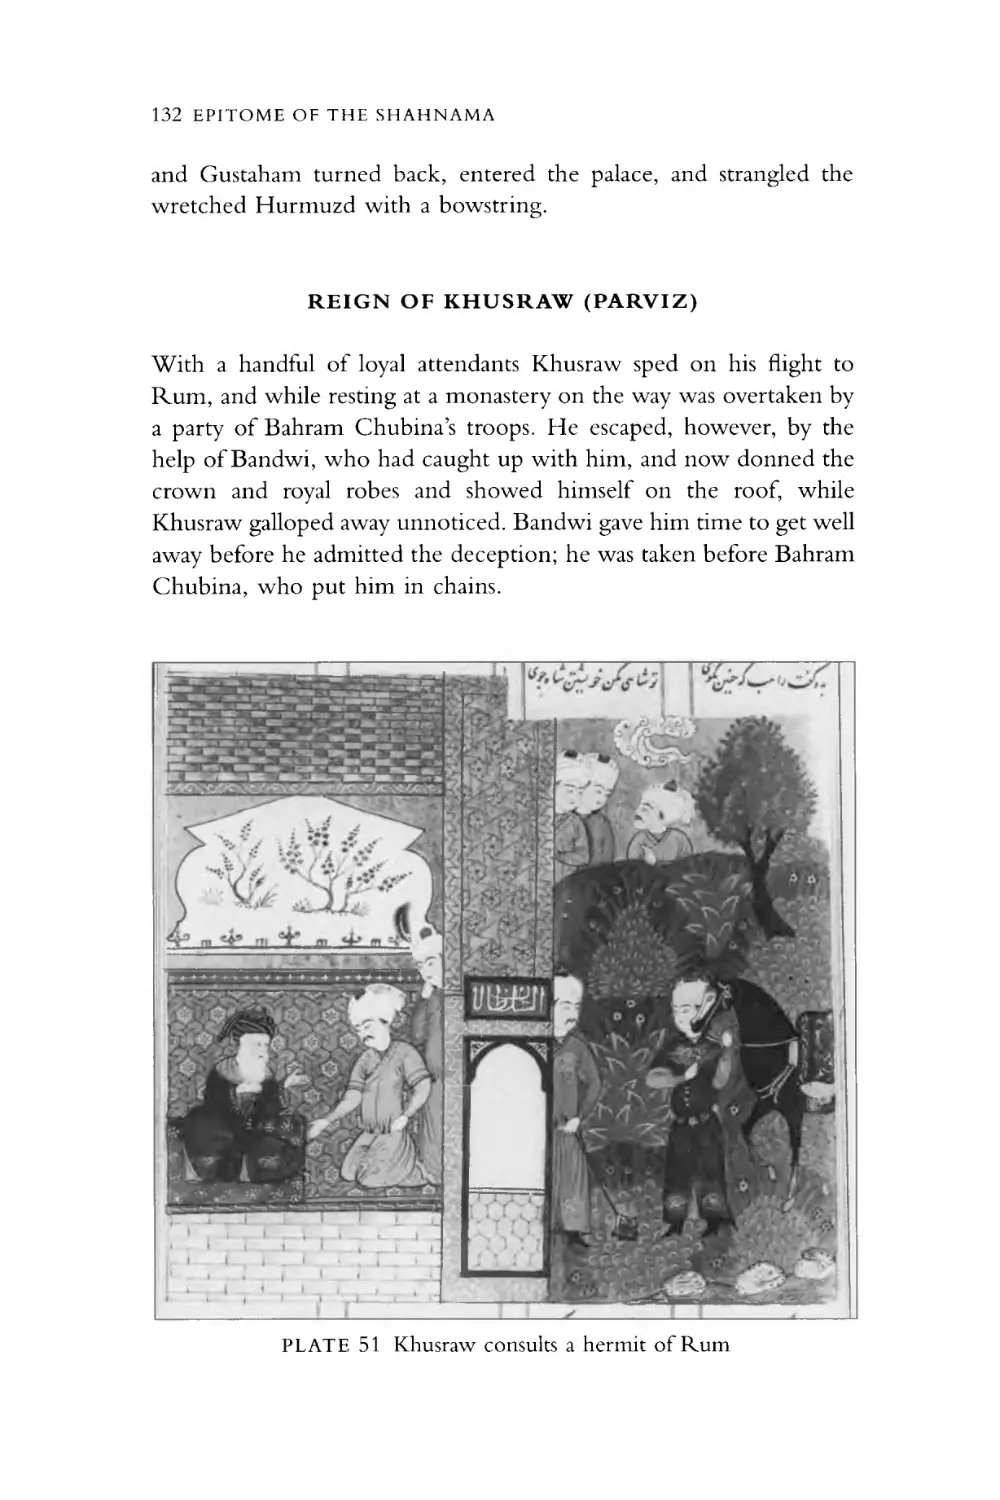 REIGN OF KHUSRAW (PARVIZ)